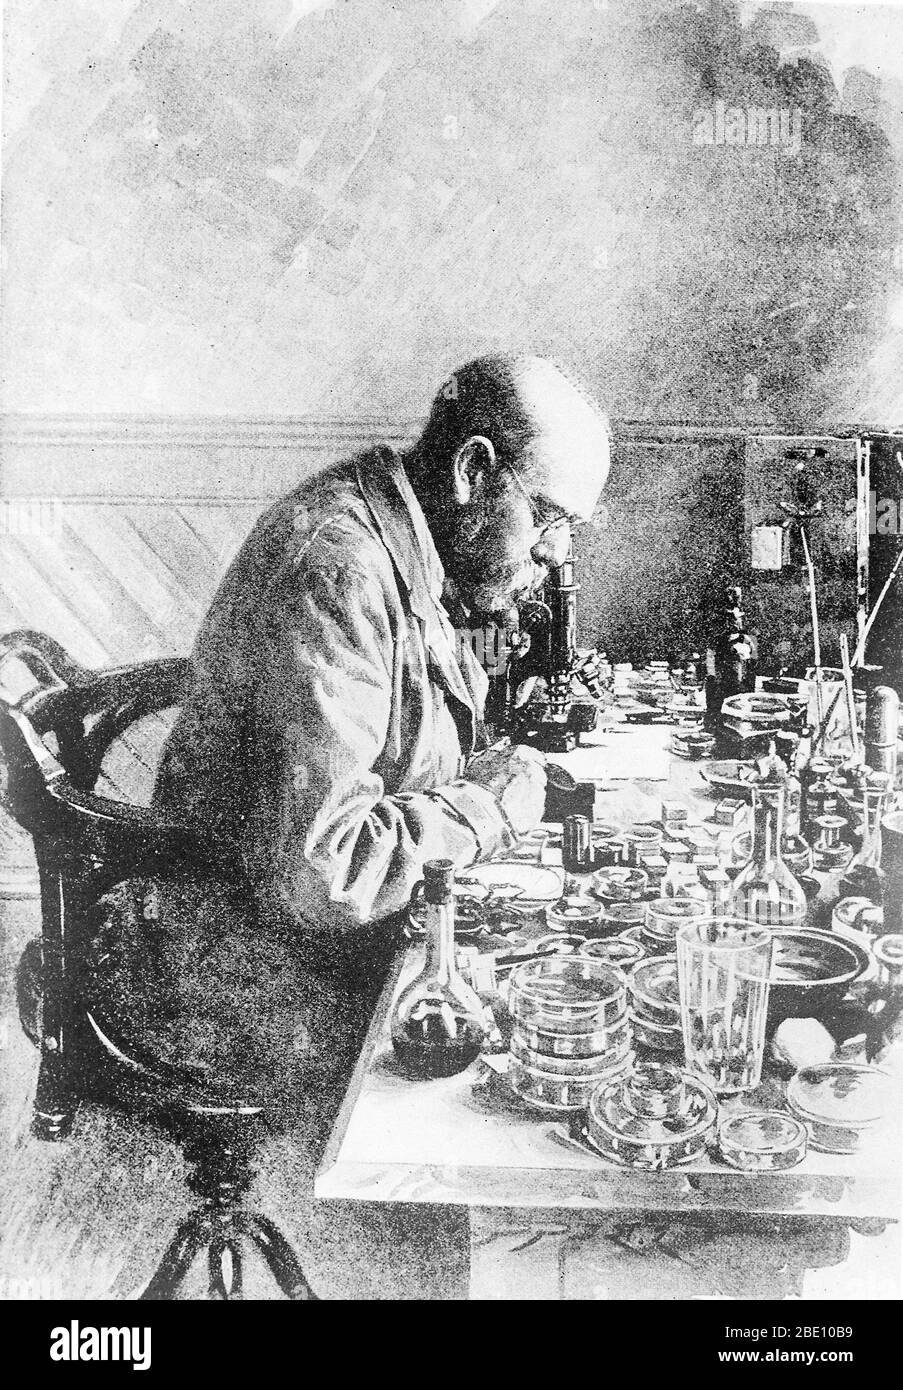 Heinrich Hermann Robert Koch (11 décembre 1843 - 27 mai 1910) était médecin et microbiologiste allemand. En tant que fondateur de la bactériologie moderne, il a identifié les agents causatifs de la tuberculose, du choléra et de l'anthrax et a apporté un soutien expérimental au concept de maladie infectieuse, qui comprenait des expériences sur les humains et les animaux. Koch a créé et amélioré des technologies et techniques de laboratoire, et a fait des découvertes clés en santé publique. Pour ses recherches sur la tuberculose, Koch a reçu le prix Nobel de physiologie ou médecine en 1905. En 1910, Koch a subi une crise cardiaque et n'a jamais fait de Banque D'Images